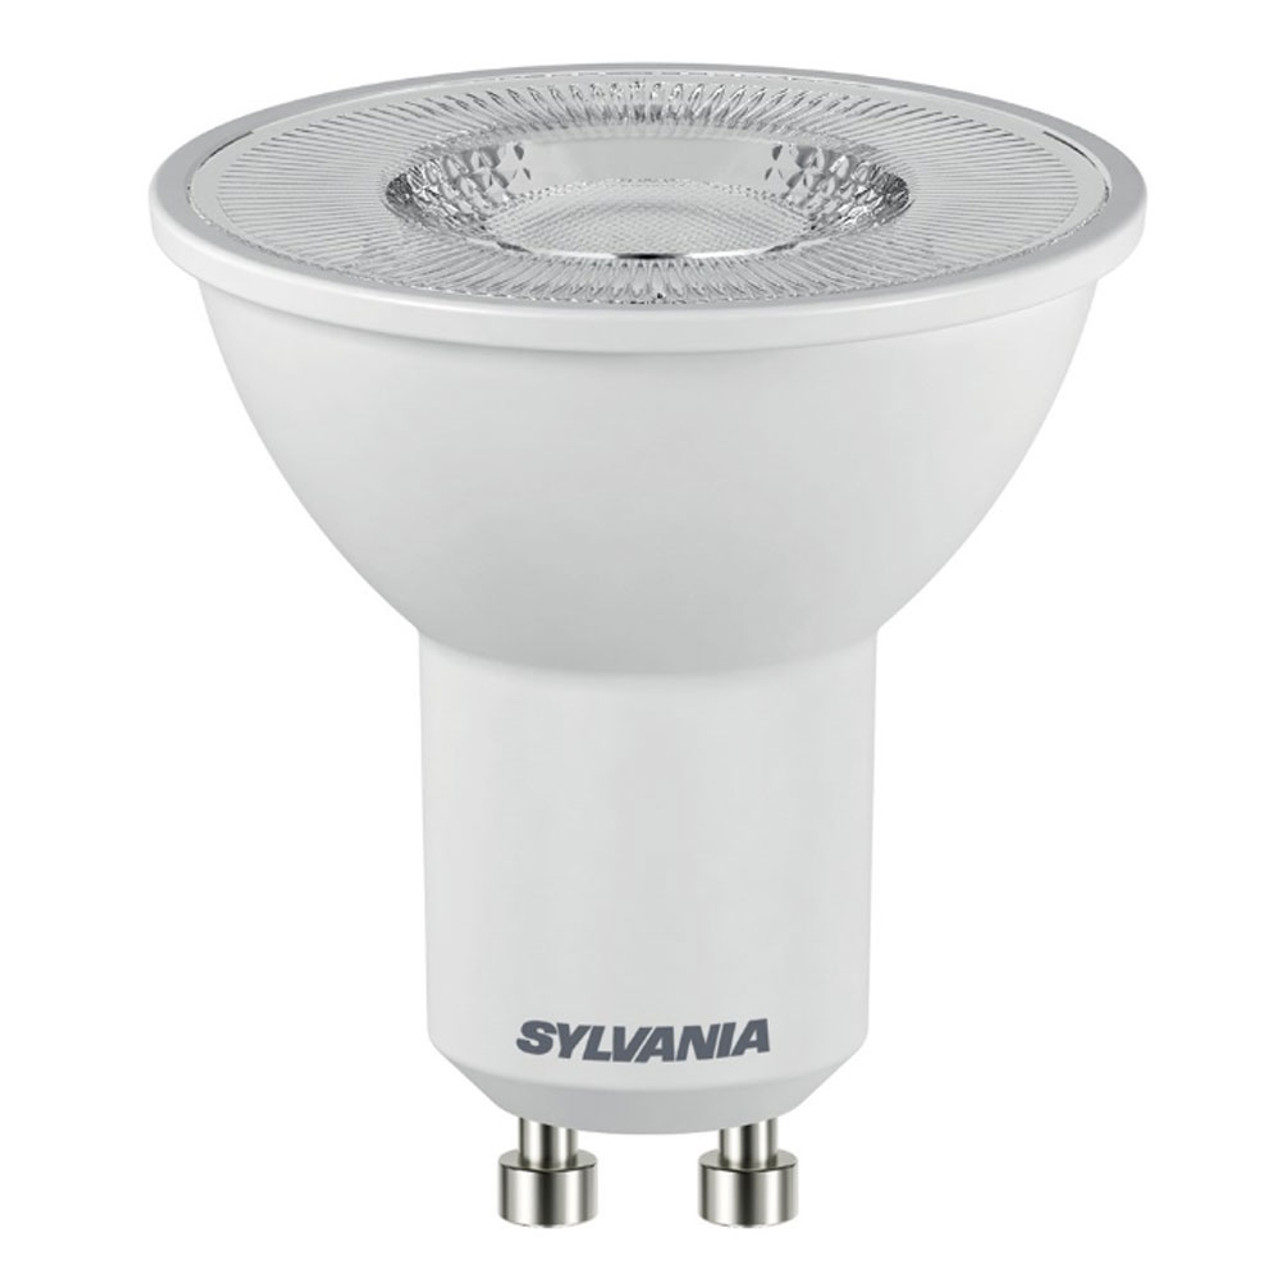 Sylvania LED GU10 6.2W Warm White 110 Degrees